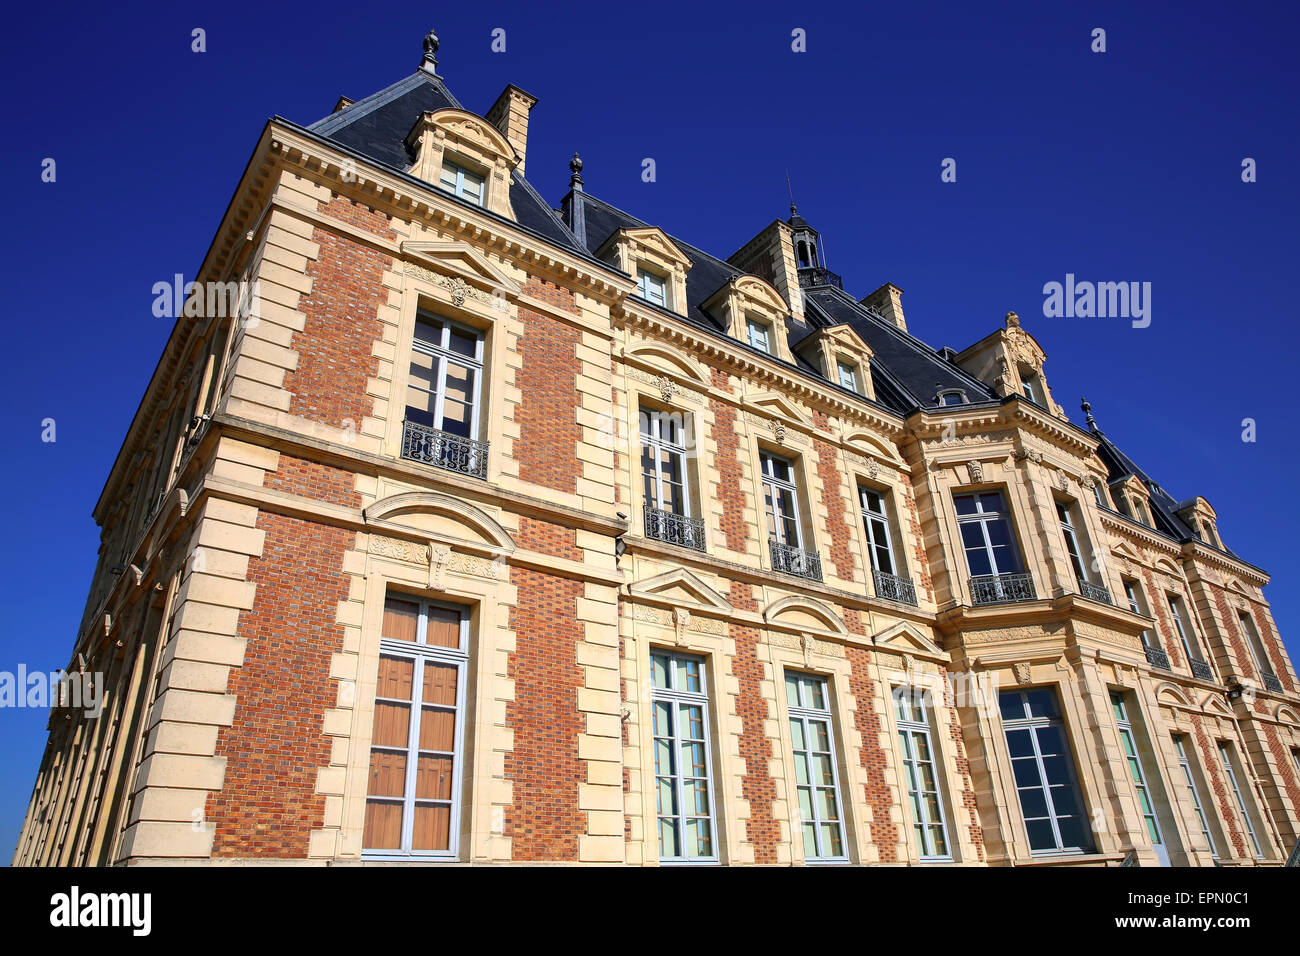 Chateau de Sceaux, grand country house in park of Sceaux, Hauts-de-Seine, not far from Paris, France. Stock Photo